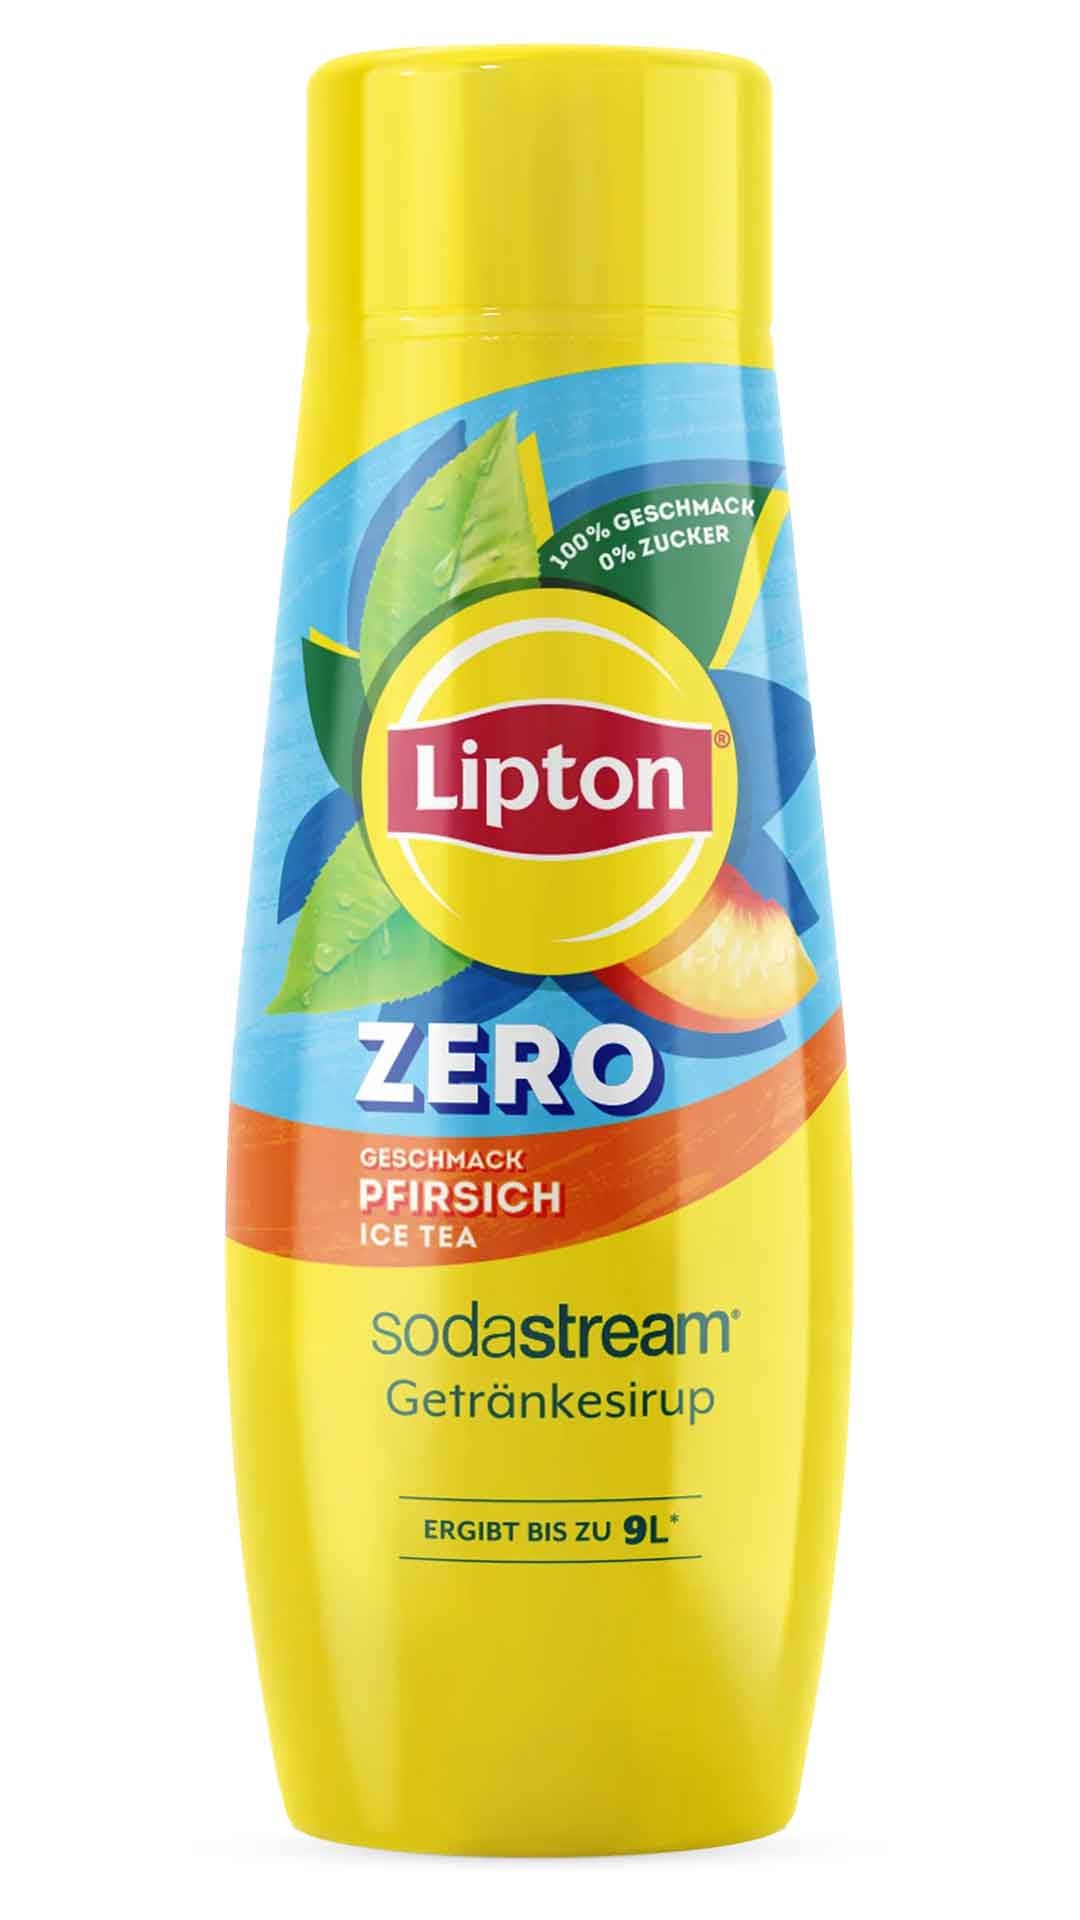 SodaStream Sirup Lipton Ice Tea Pfirsich Zero Sirup